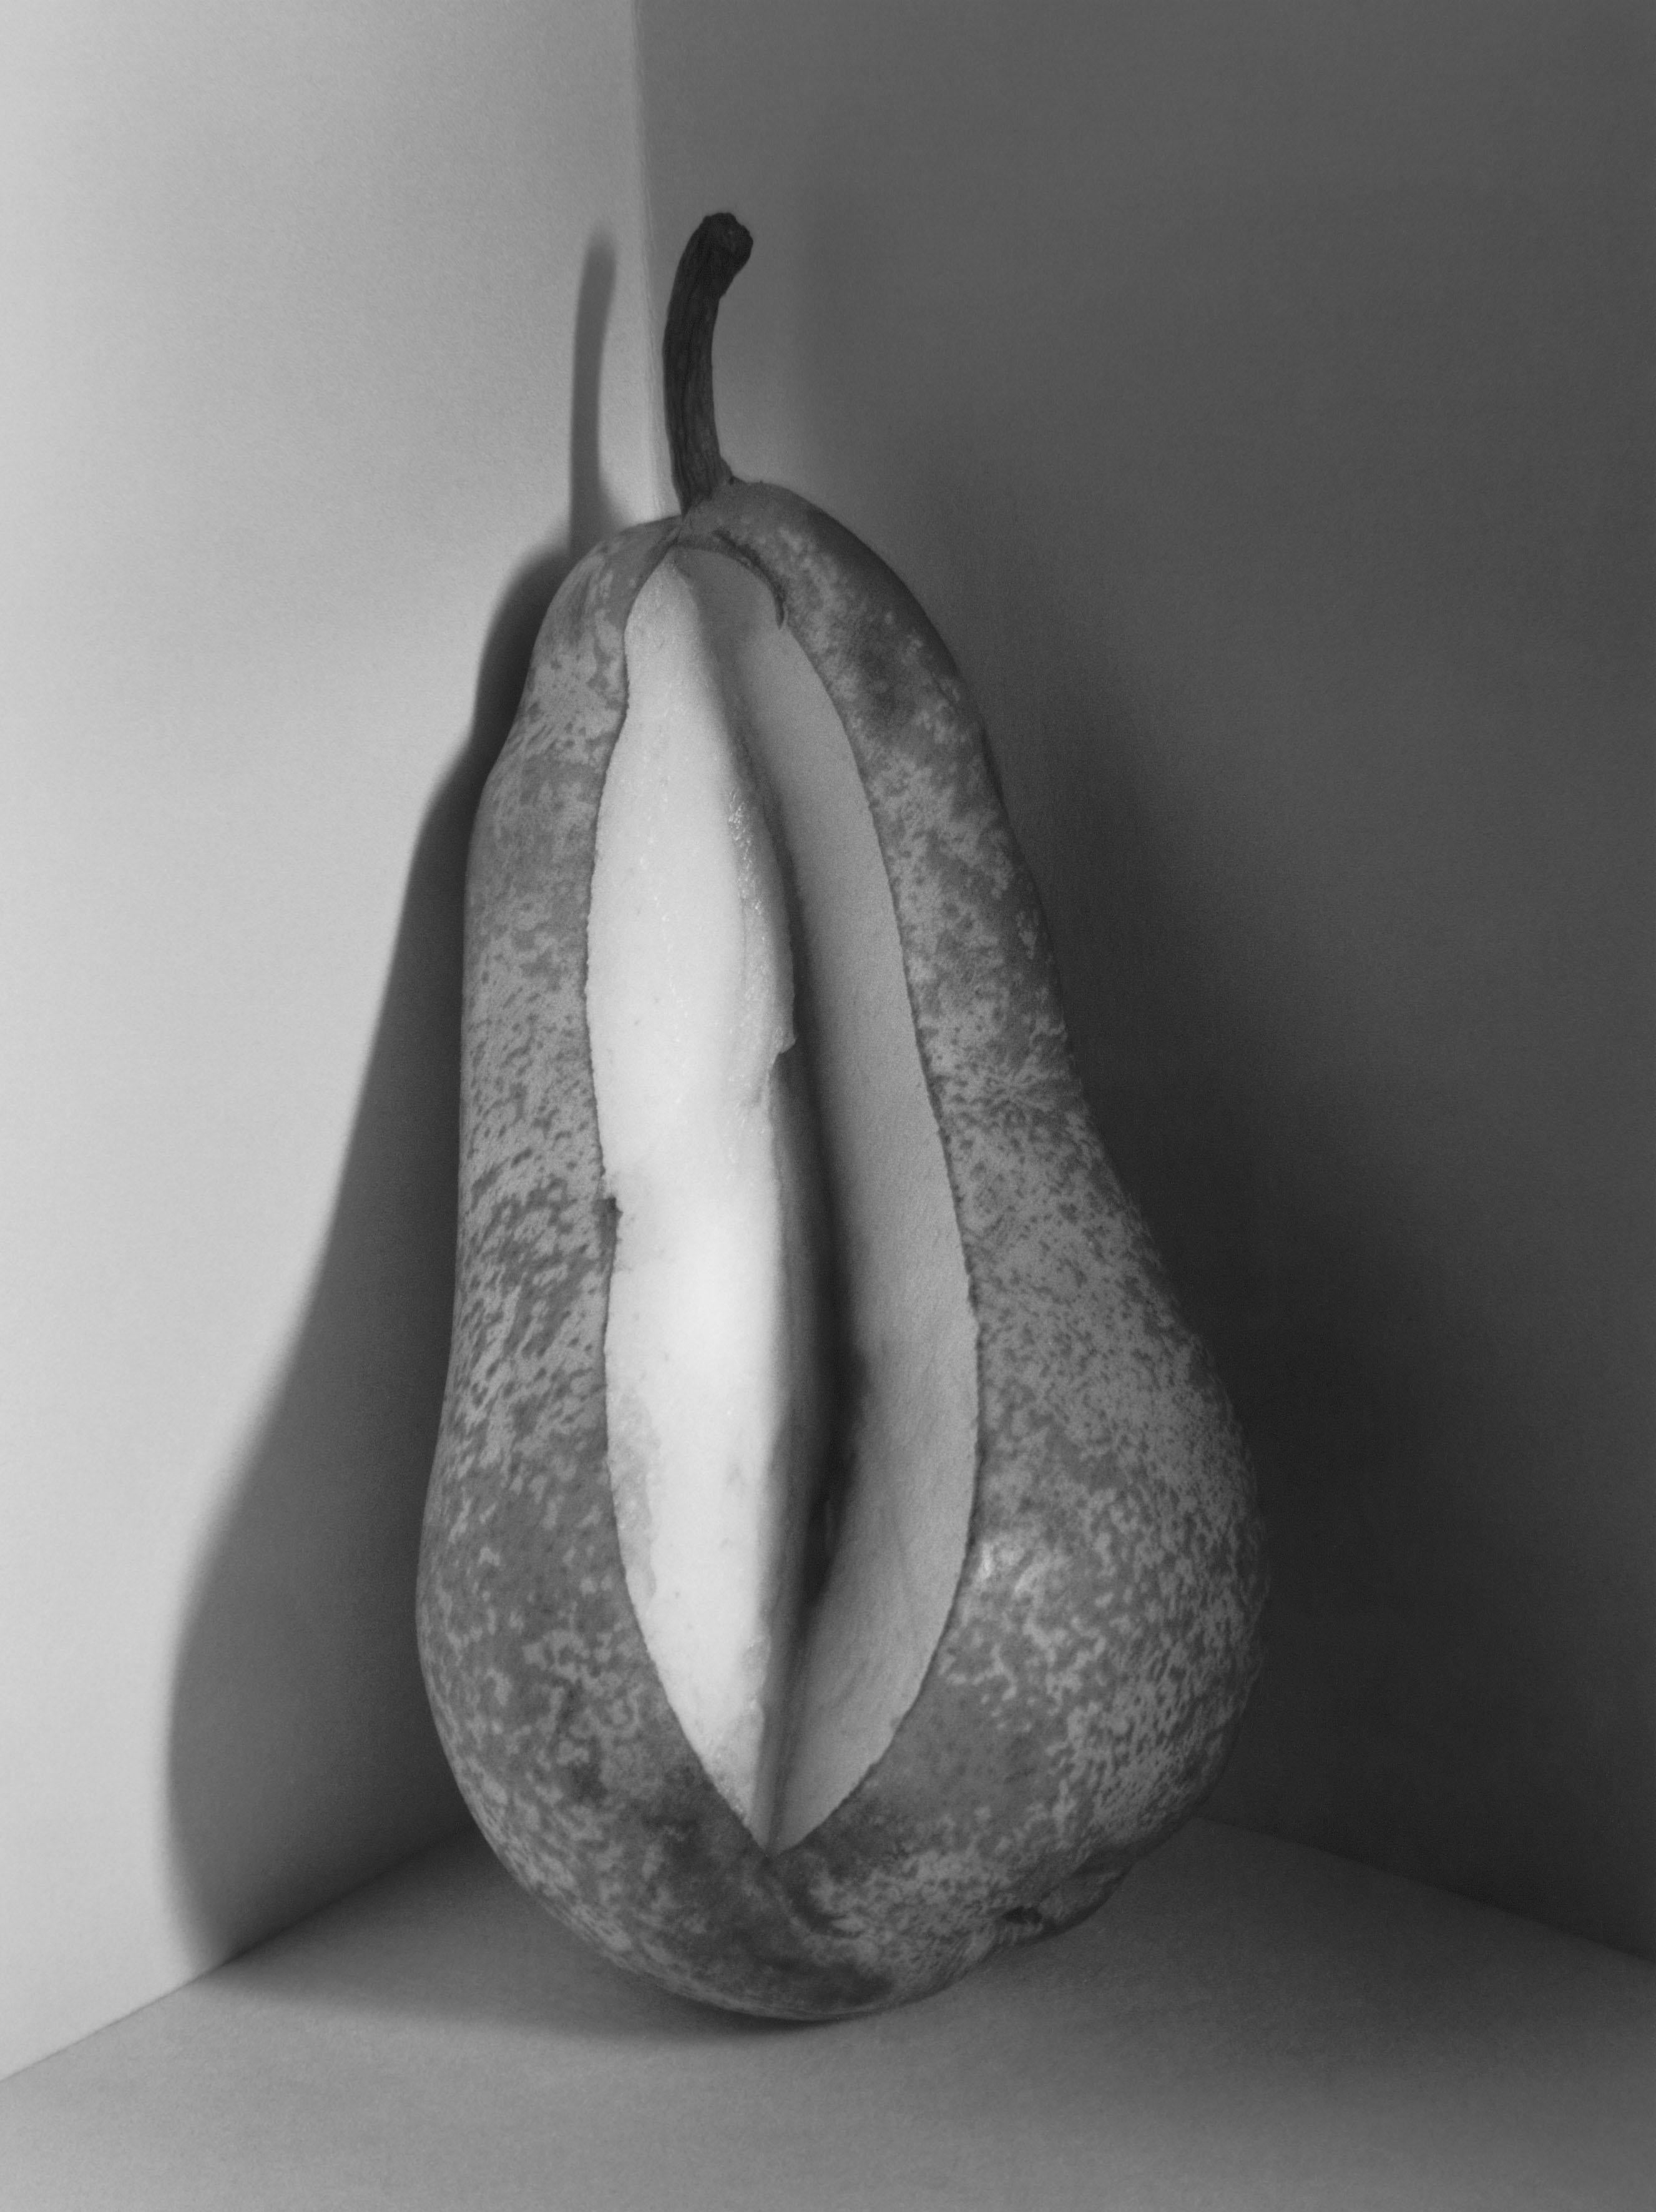 Pera, Suiza, 1998 - Flor Garduño (Black and White Photography)